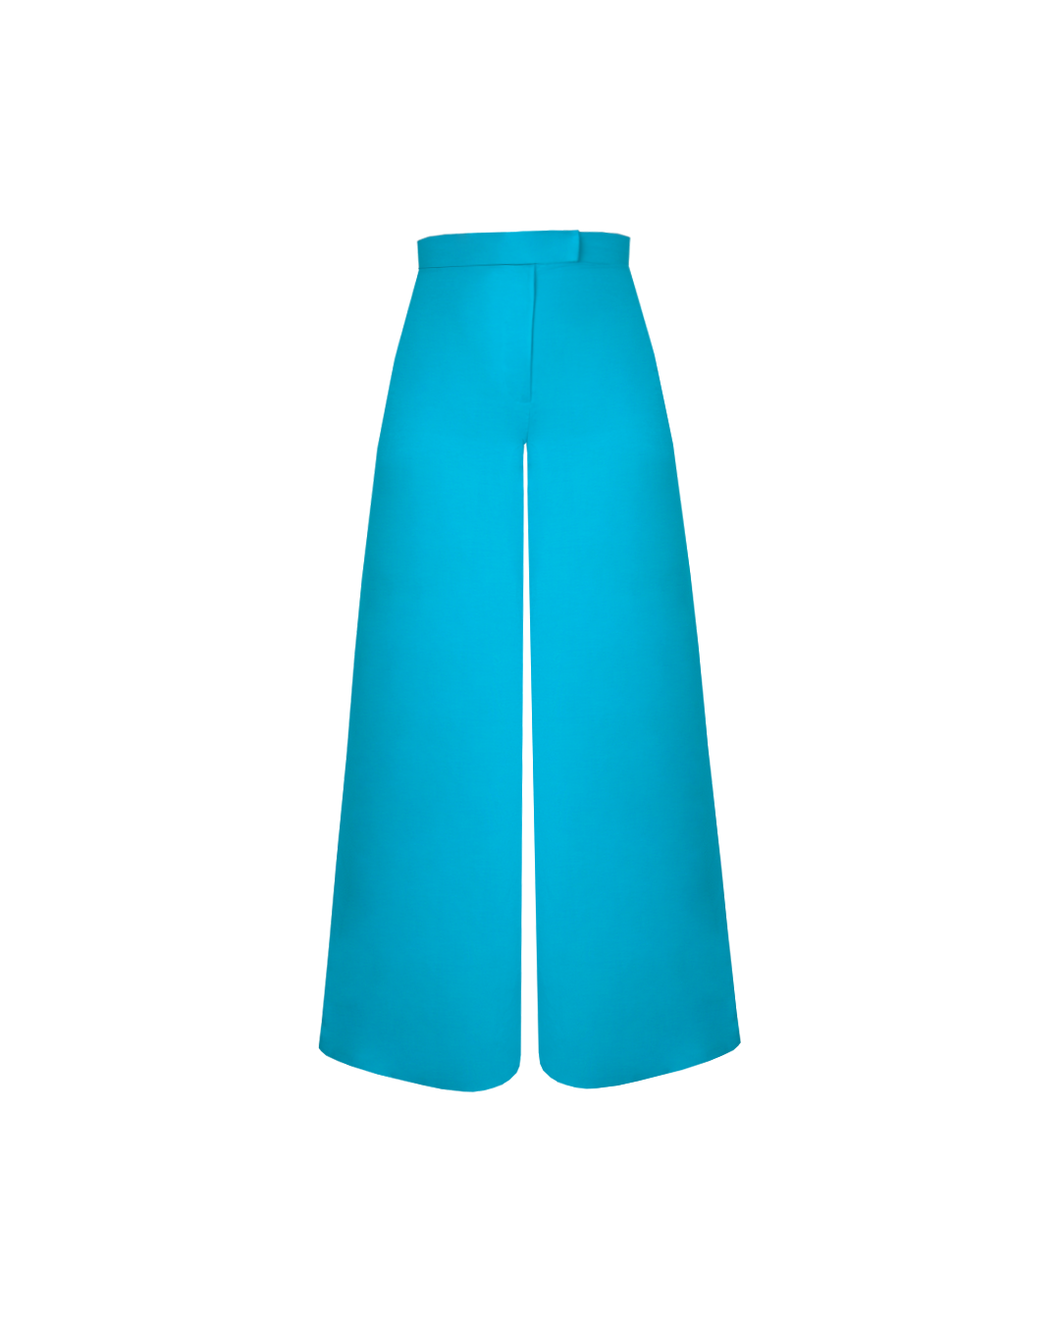 Pantalona Detalhe Cós - Linho Blue